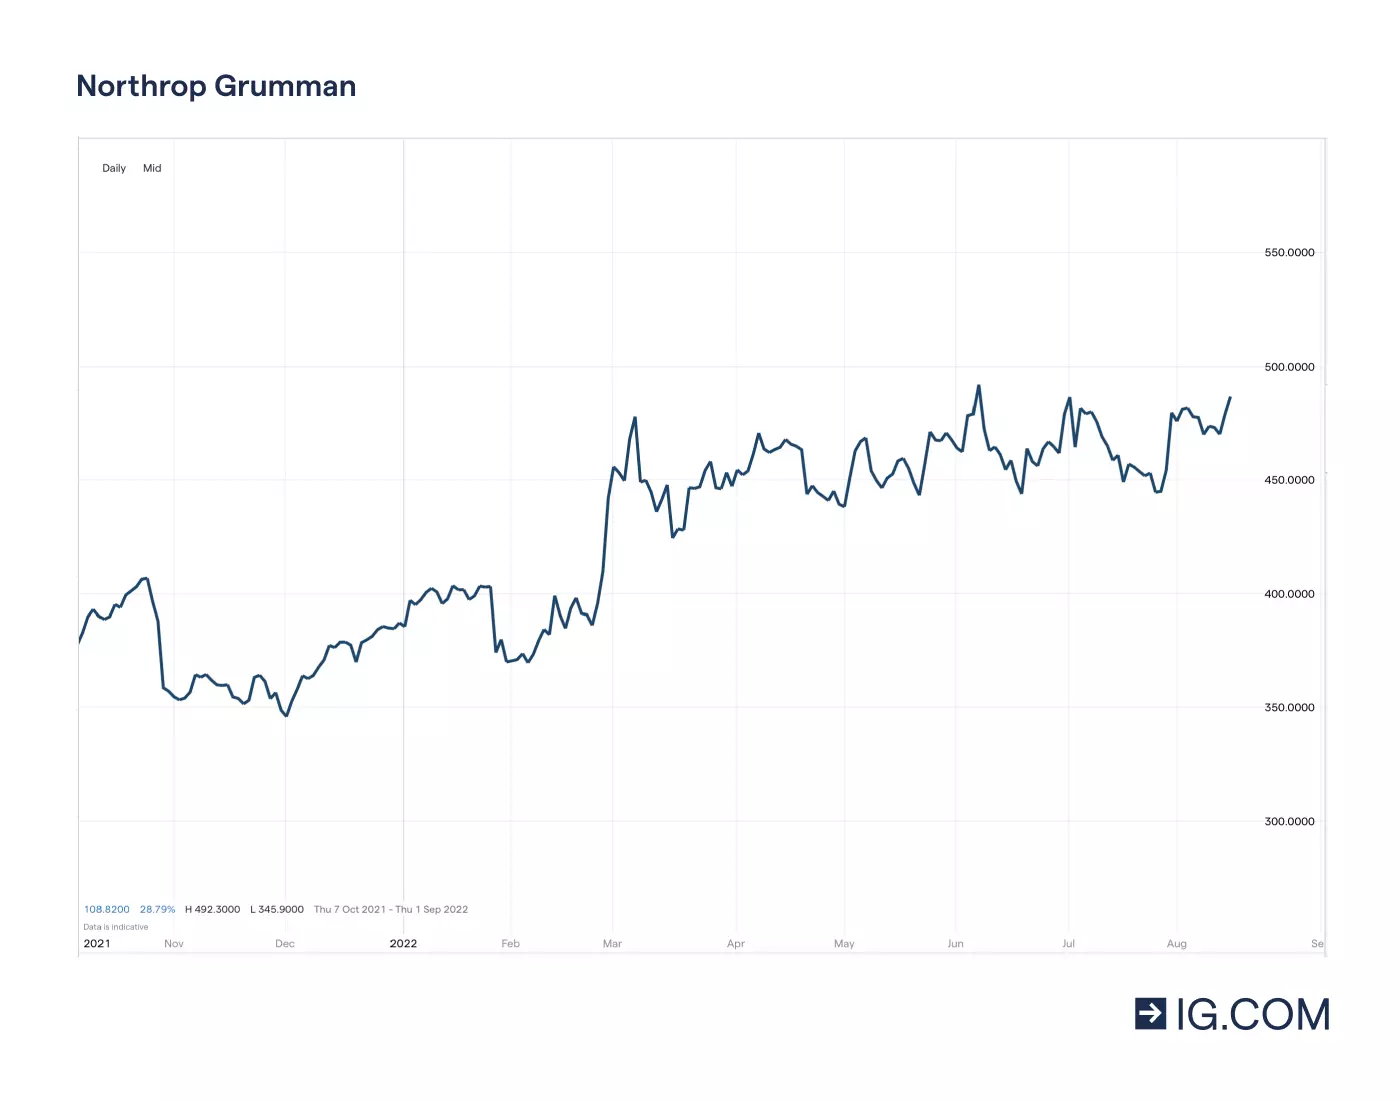 Graf som visar Northrop Grumman-aktiens olika prisnivåer på en ettårig tidslinje – bland annat en bottennotering på 353,27 i november 2021 innan den steg till en toppnotering på 490,82 i mars 2022 – samt aktiekursen på 456,16 i maj 2022